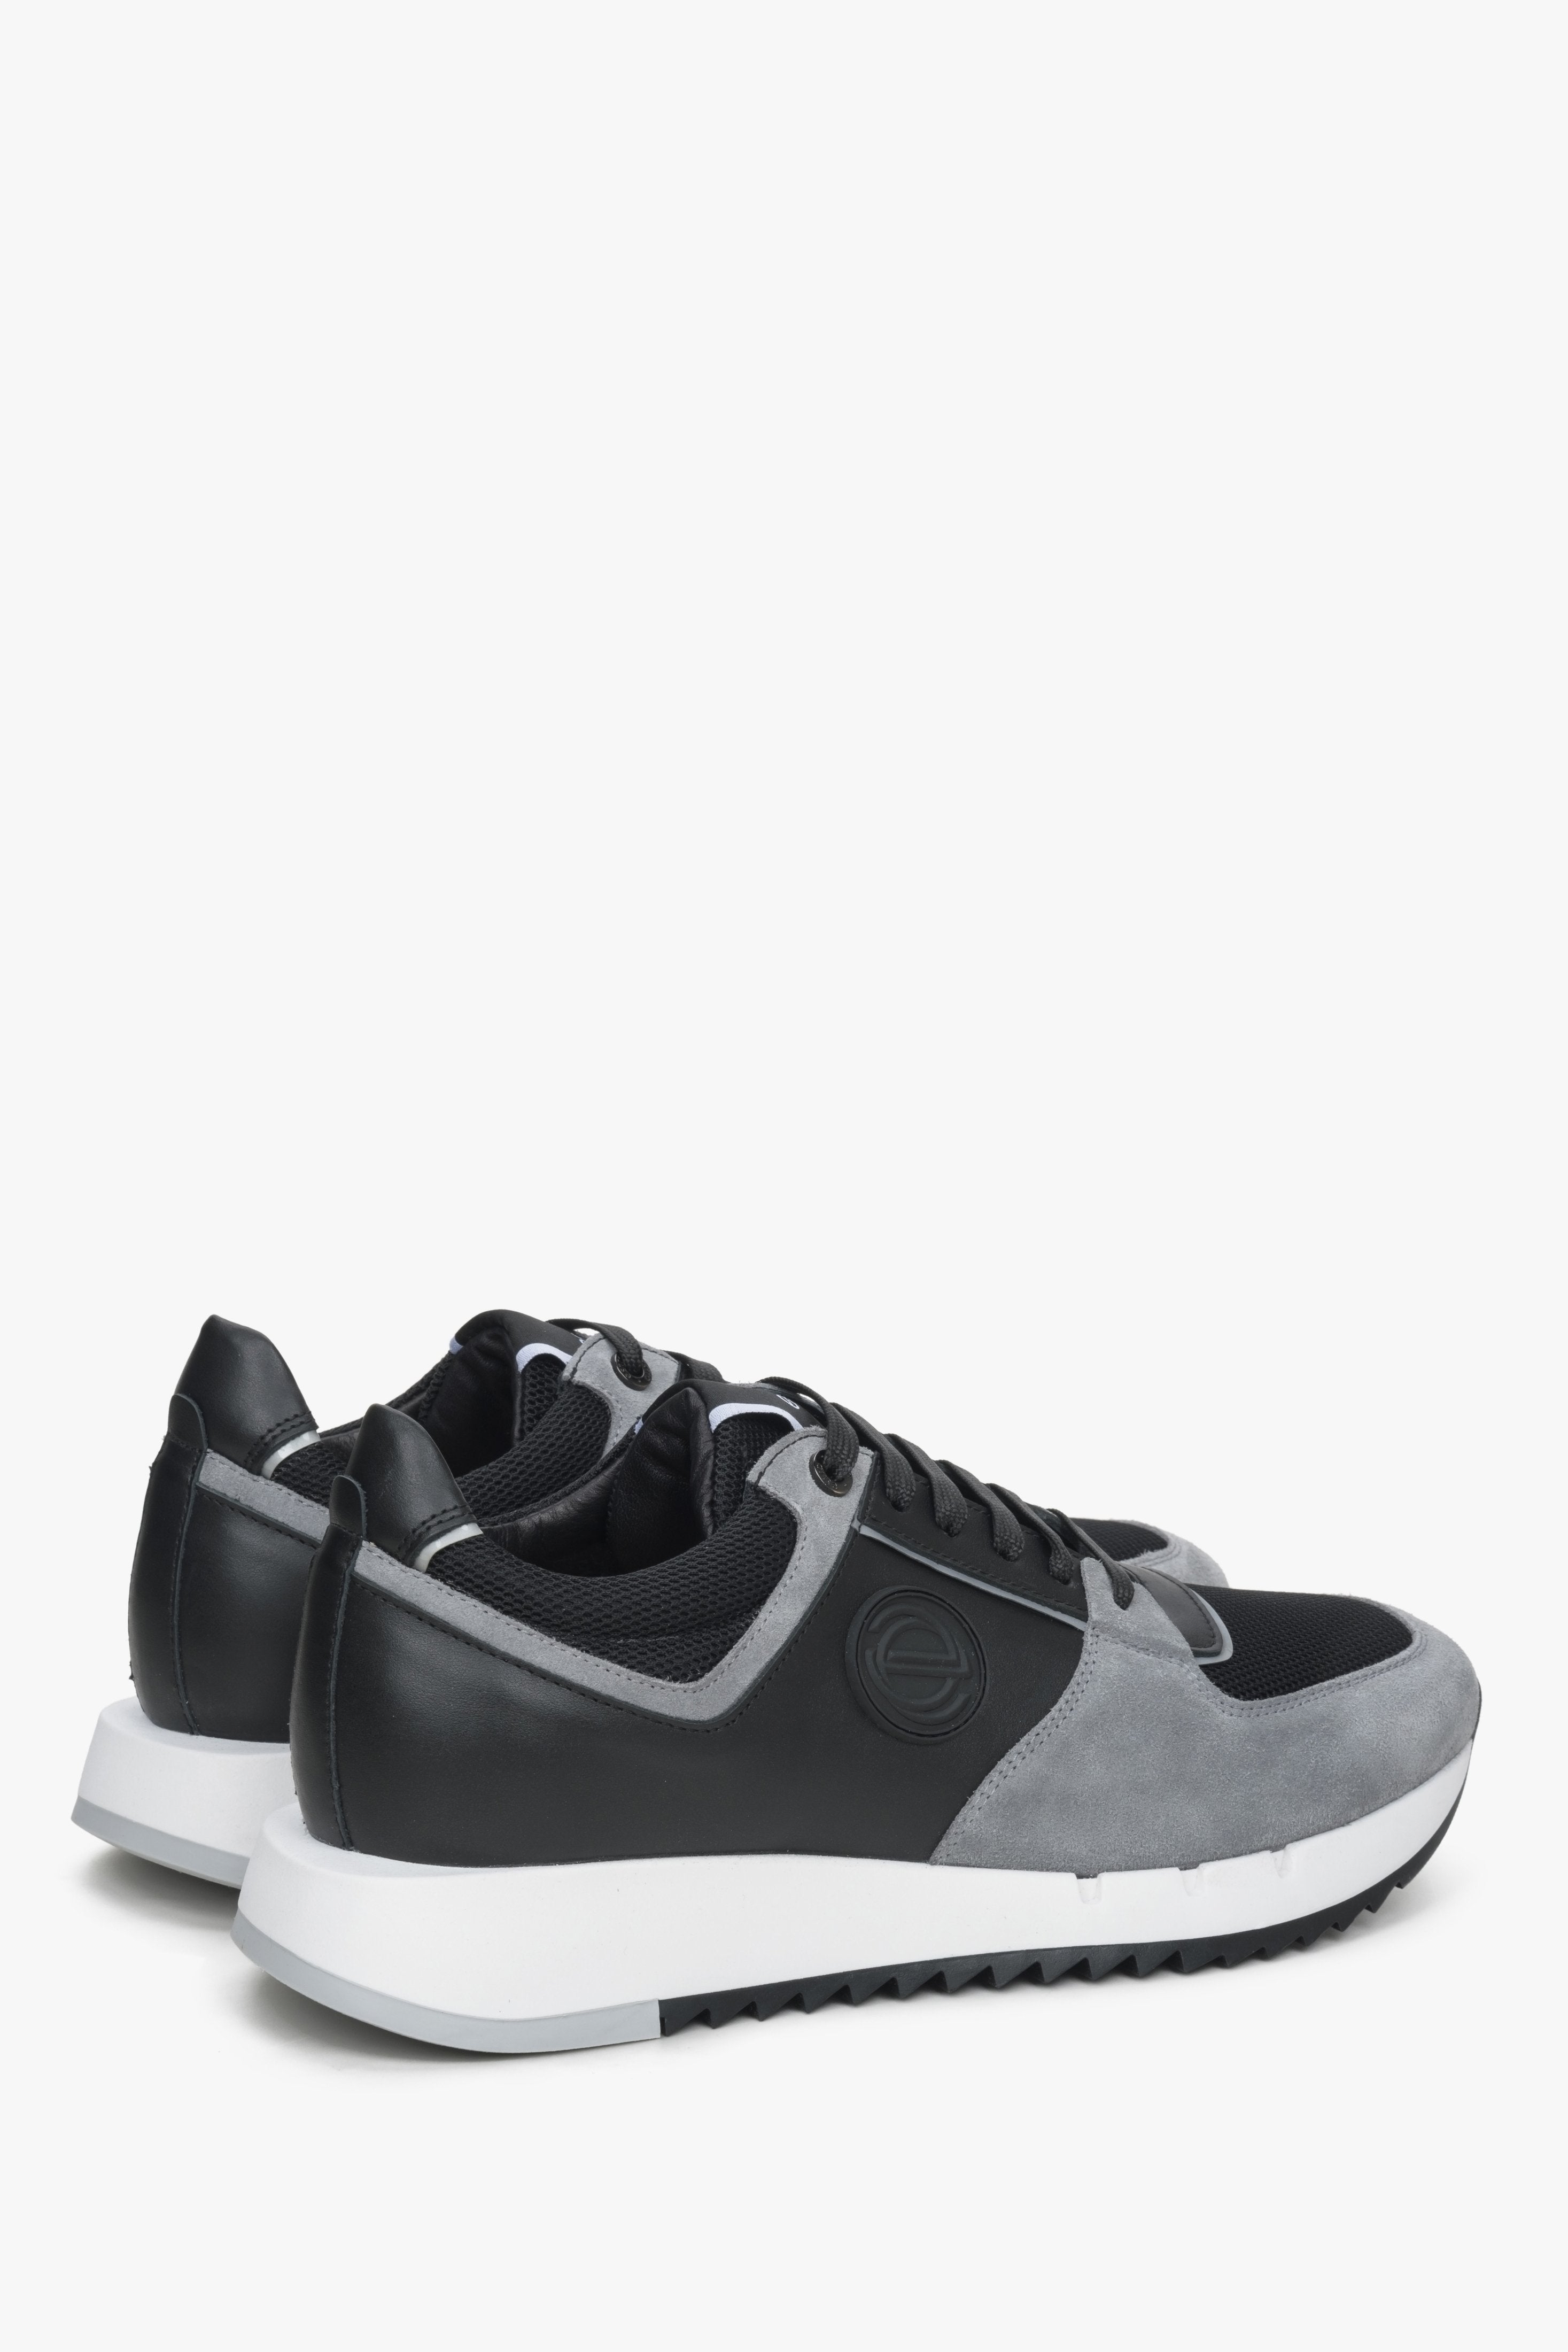 Czarno-szare welurowo-skórzane sneakersy męskie Estro - zbliżenie na zapiętek i linię boczną buytów.